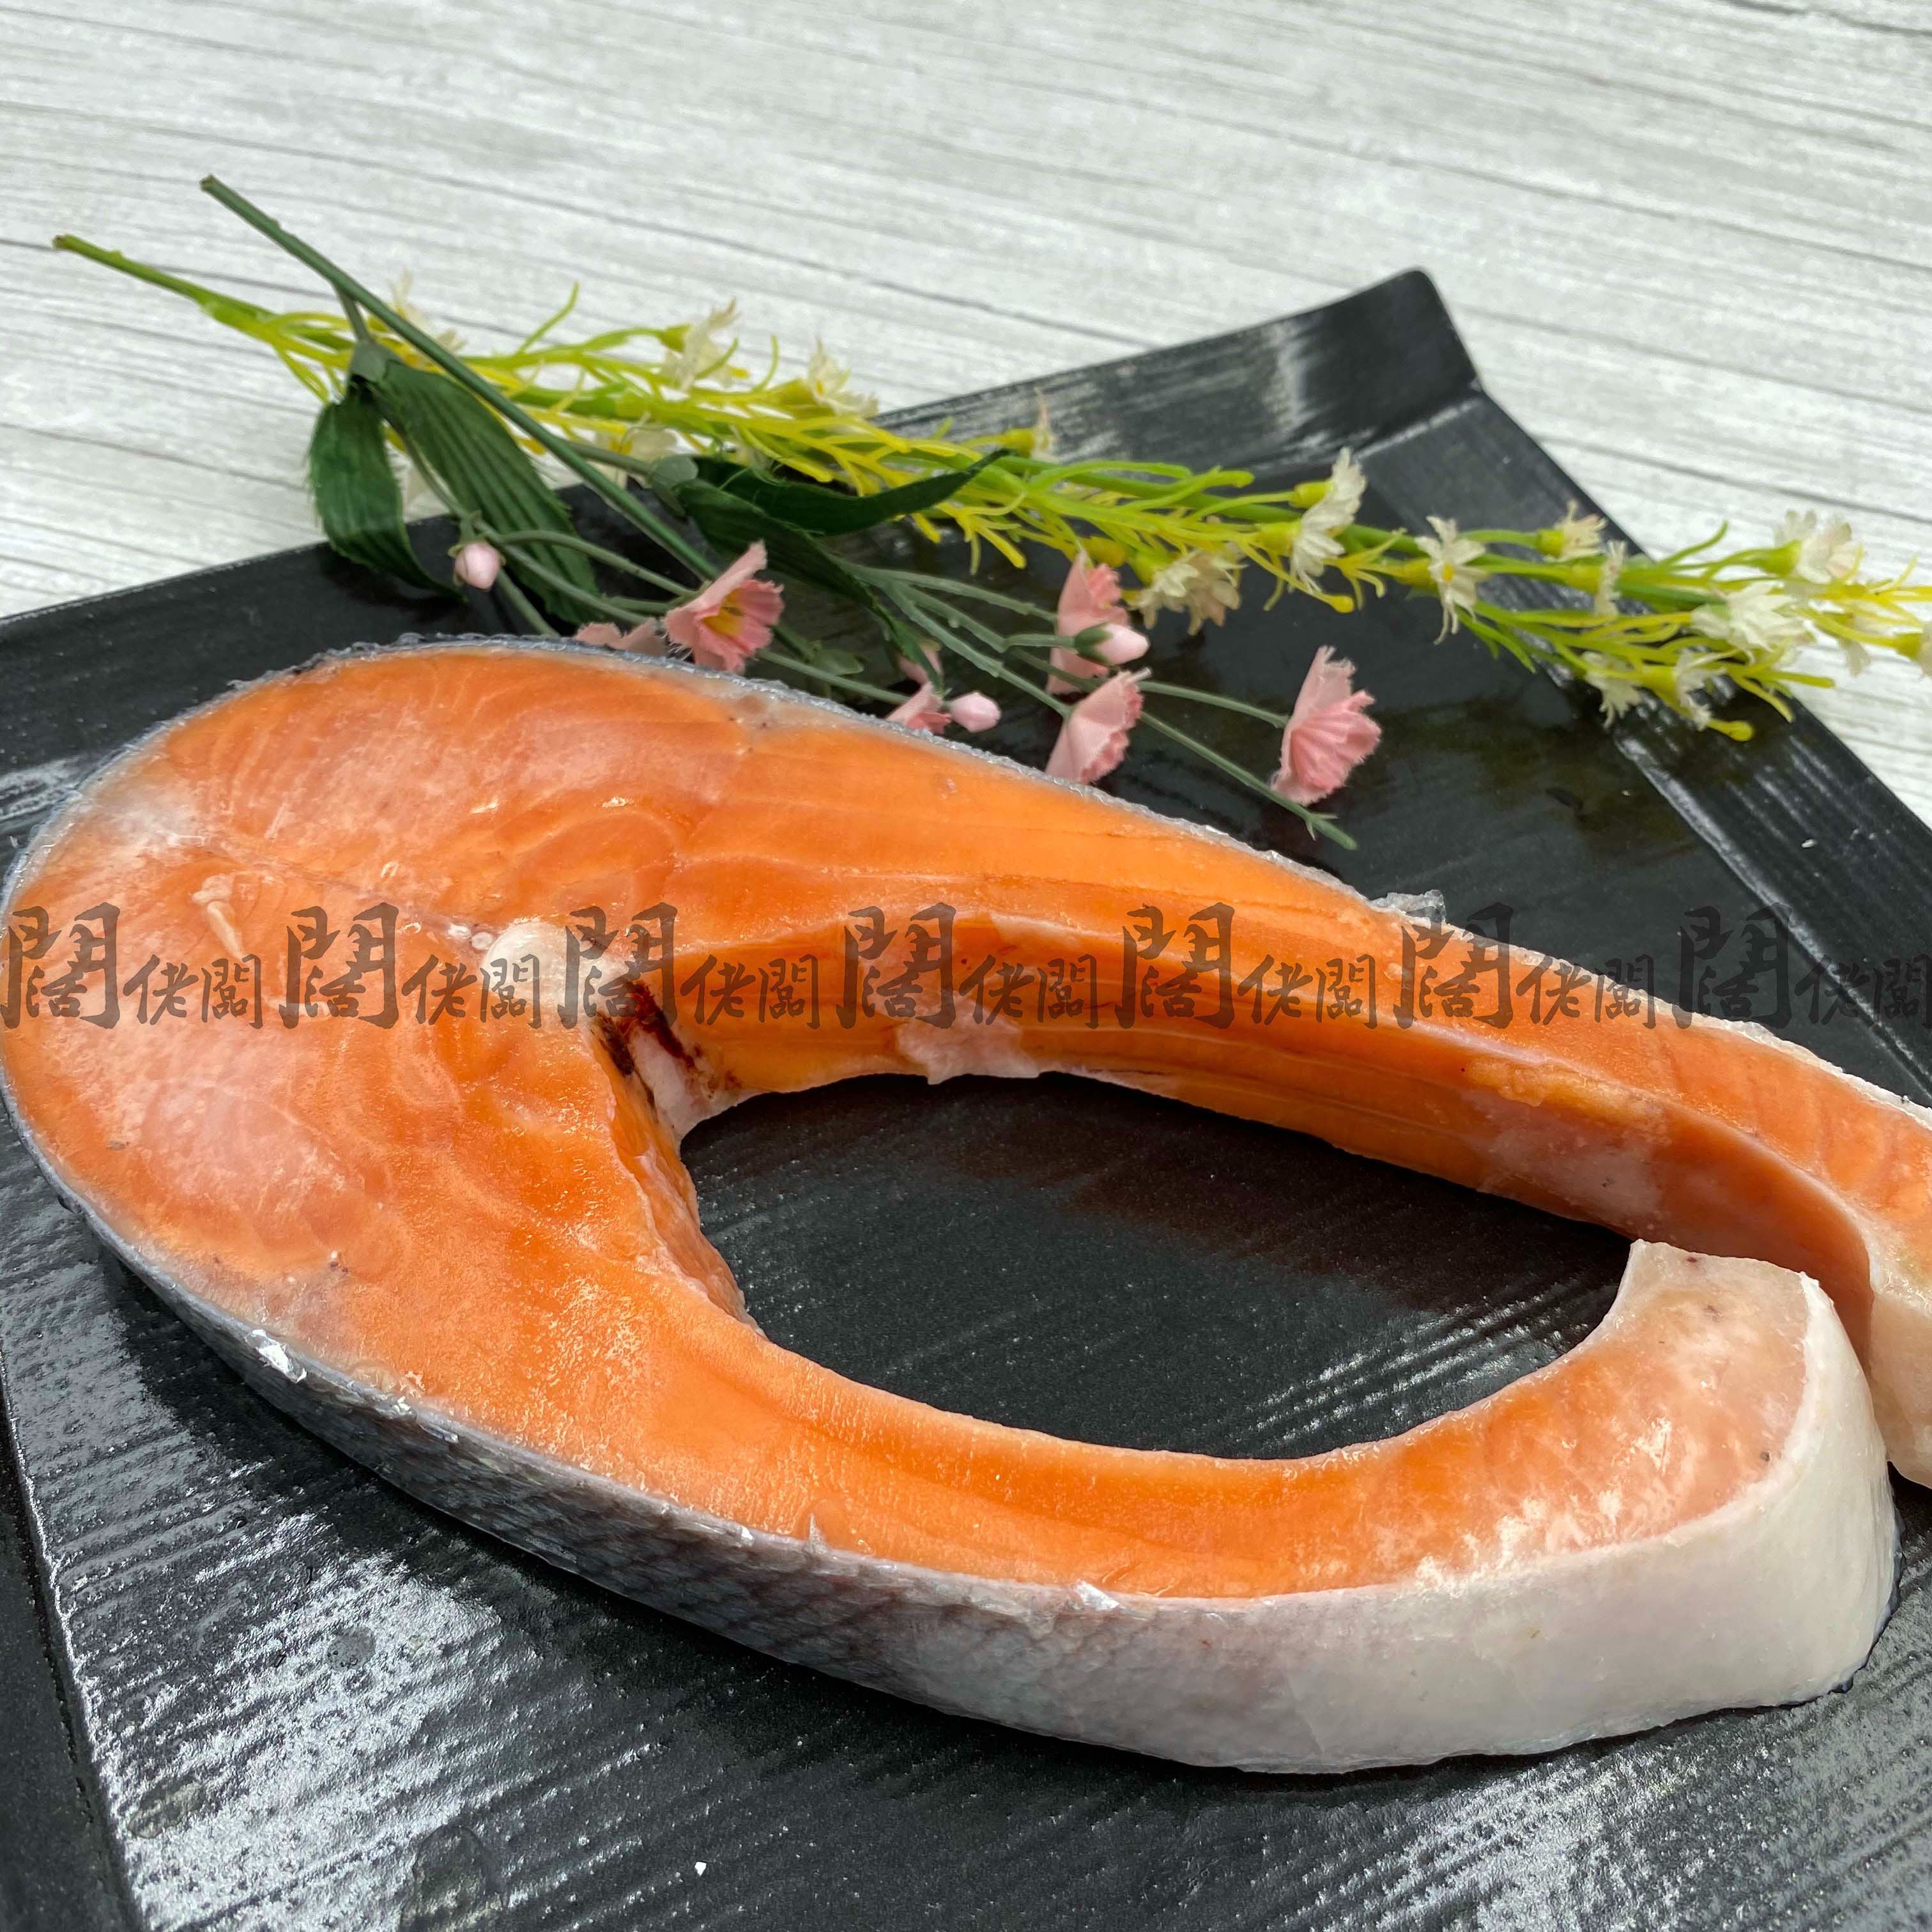 嚴選鮭魚切片真空包裝300g/片智利鮭魚鮭魚切片三文魚鮭魚輪切鮭魚片